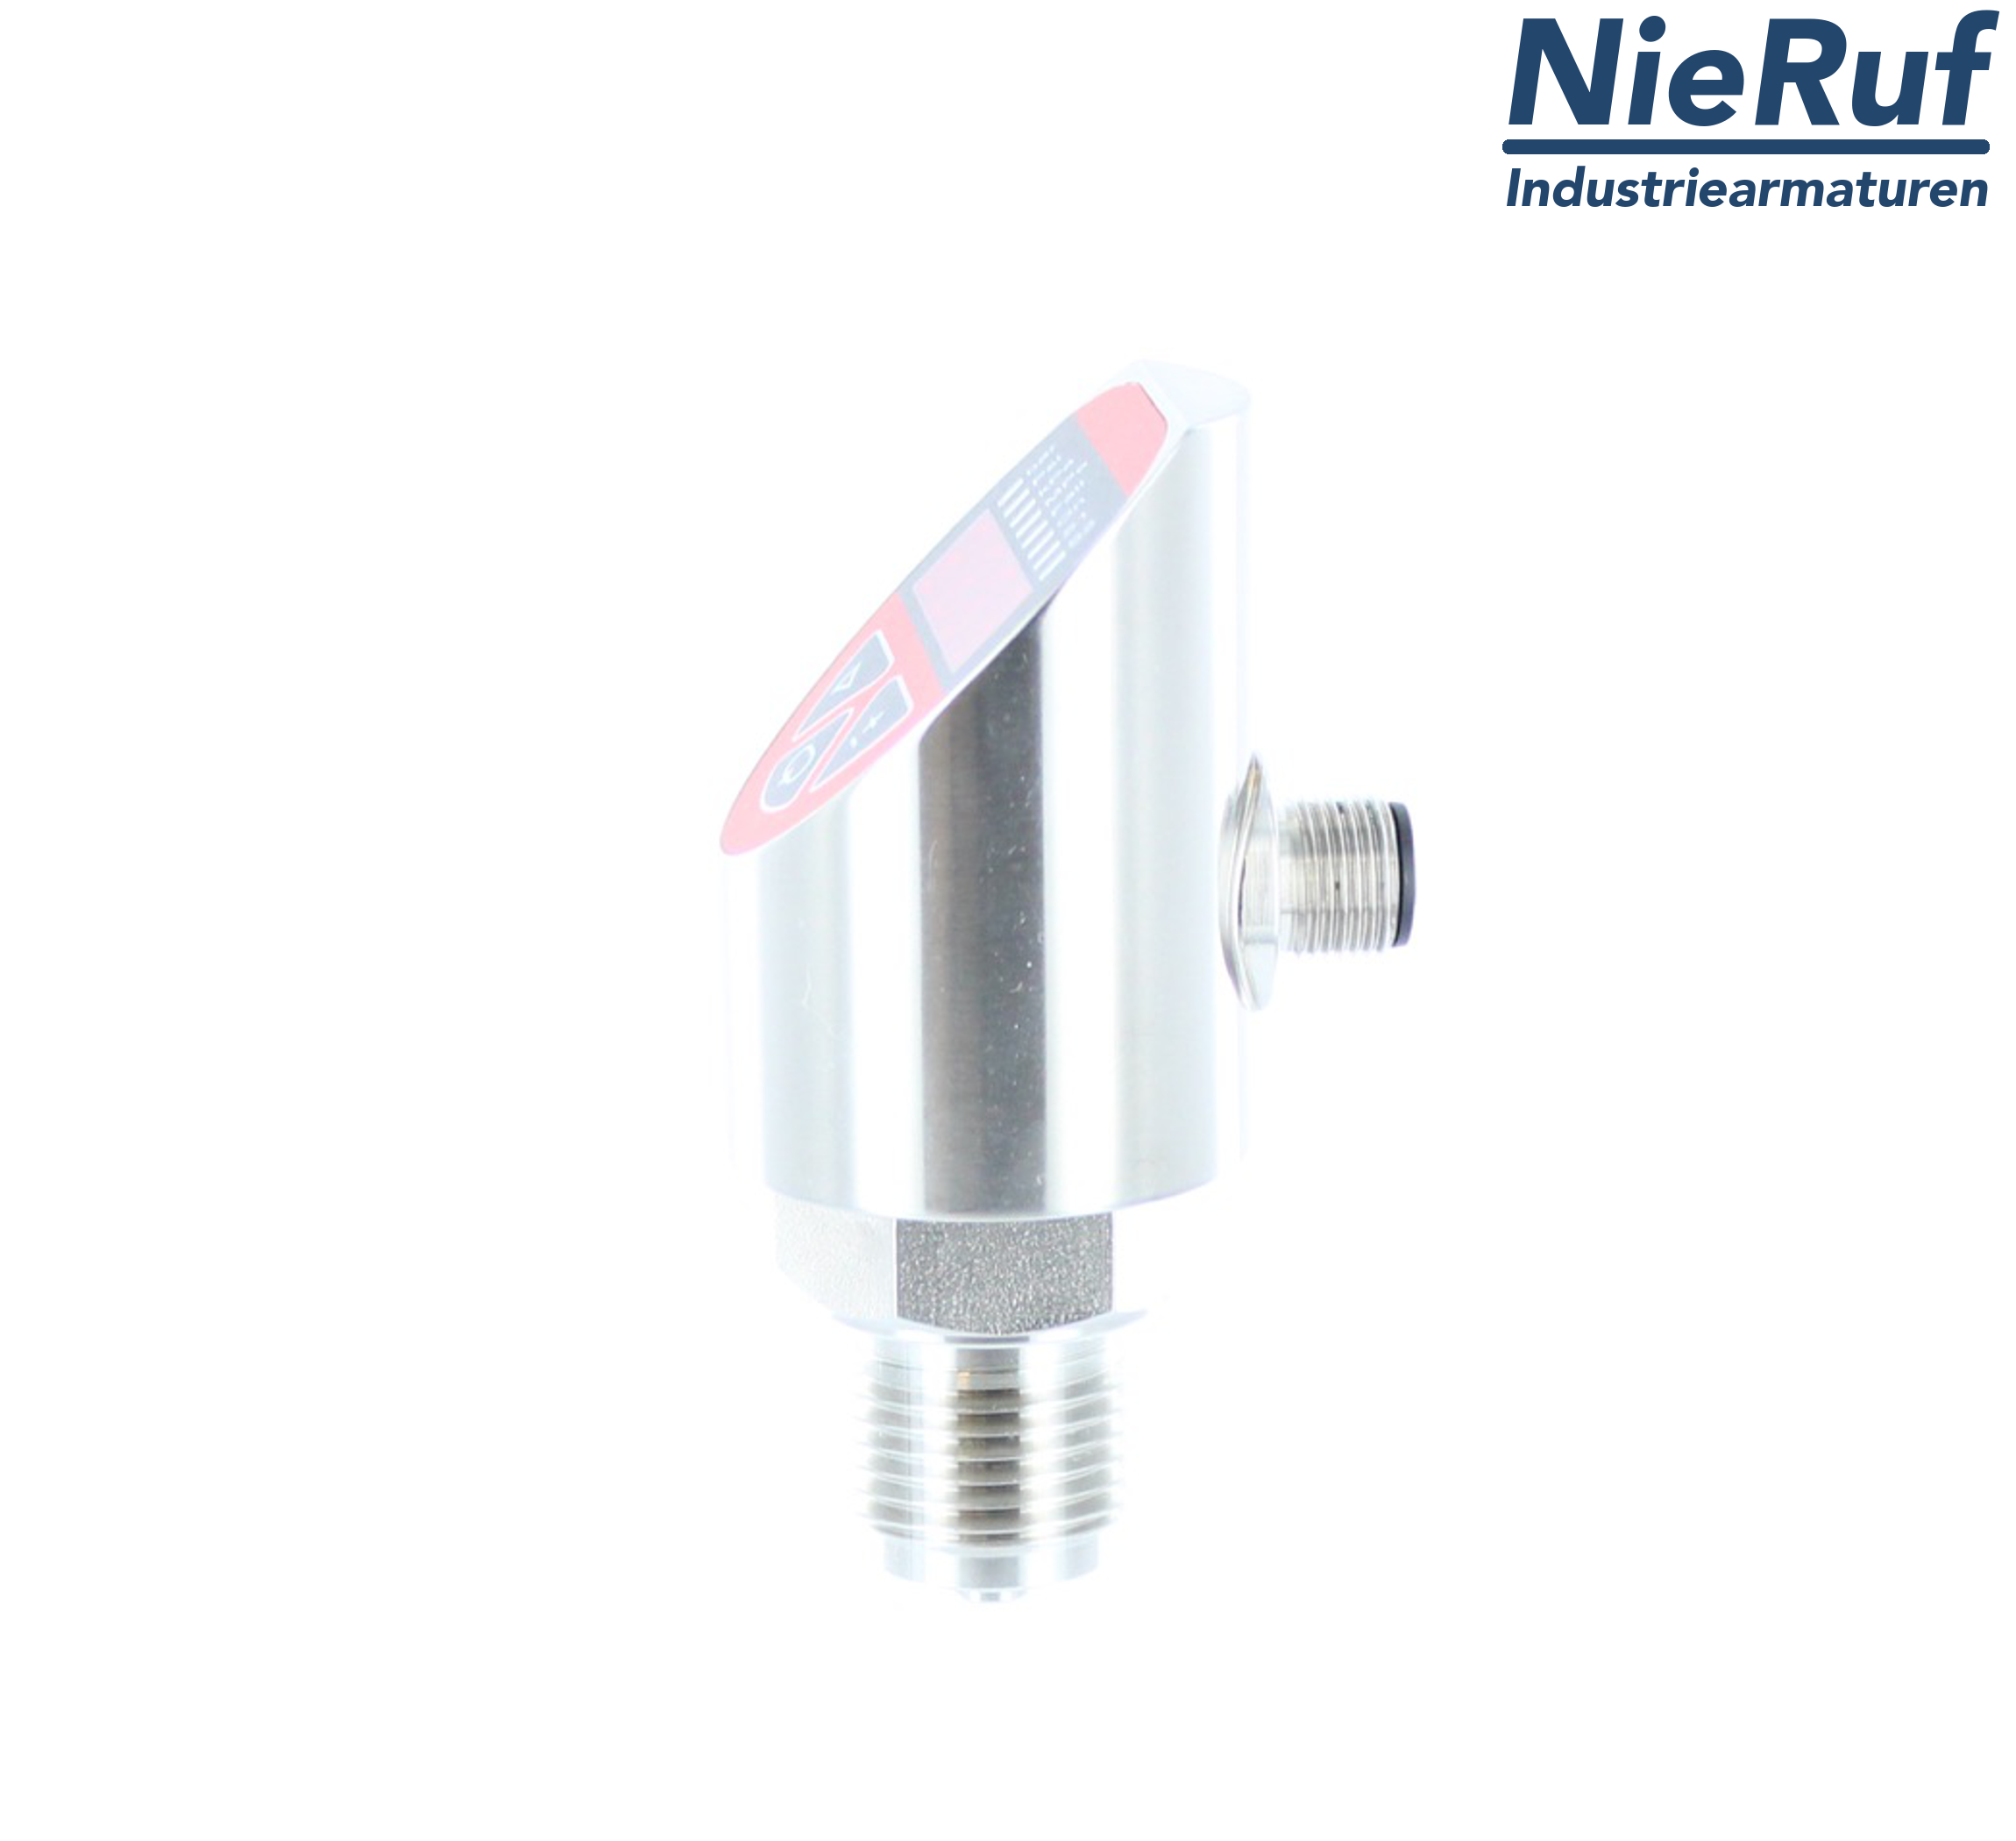 digital pressure sensor G 1/2" B IB 4-wire: 1xPNP, 1x4 - 20mA, Desina FPM 0,0 - 25,0 bar